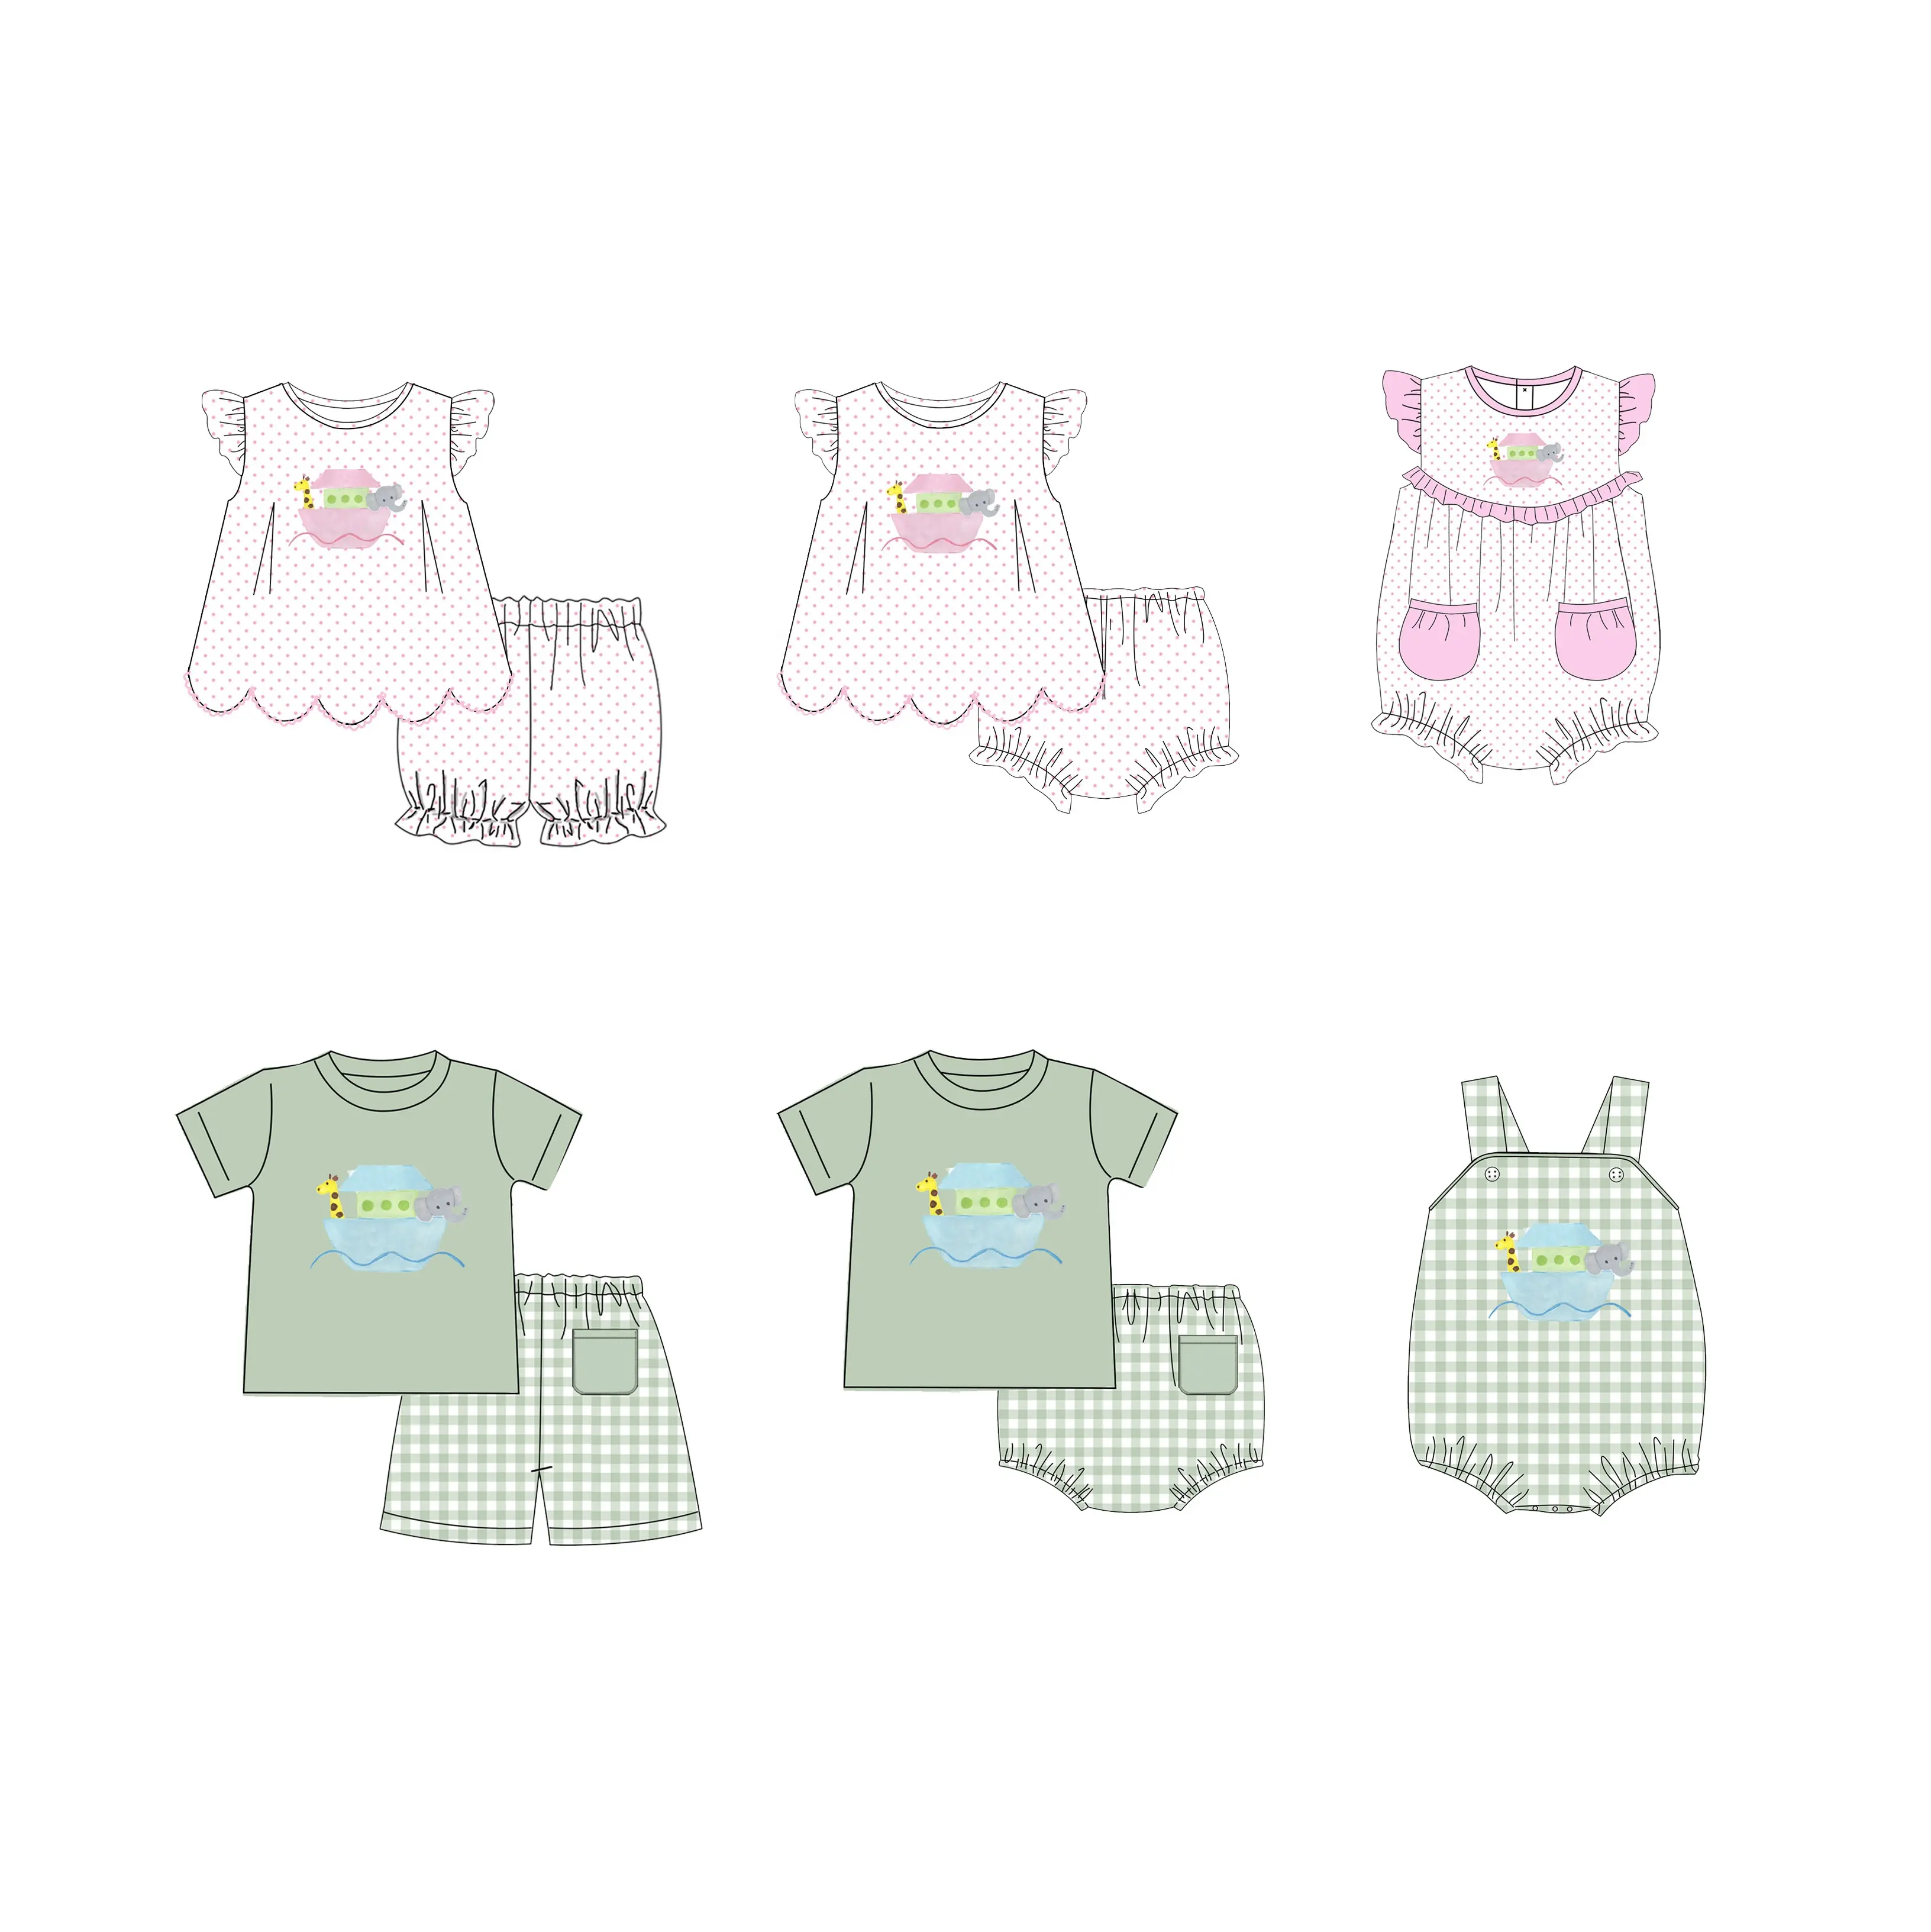 Puresun-قميص بناتي صيفي بتصميمات مخصصة, قميص بناتي صيفي من القطن مزركش بالنقاط البيتي باللون الوردي ومطرز باللؤلؤ مناسب لفصول الصيف